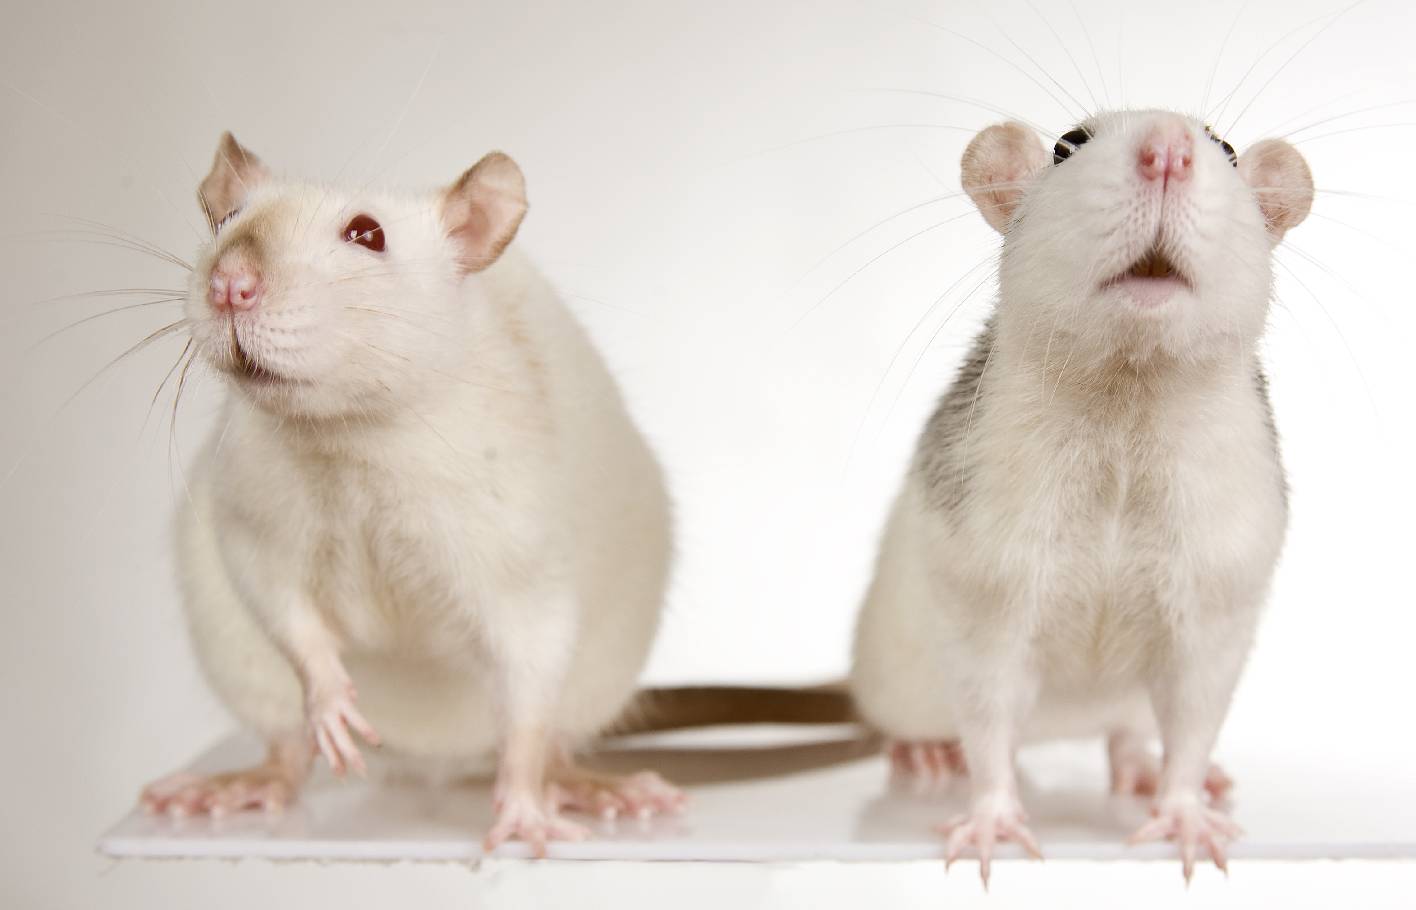 Zwei weisse Ratten vor einem weissem Hintergrund von denen eine in die Luft schnuppert.